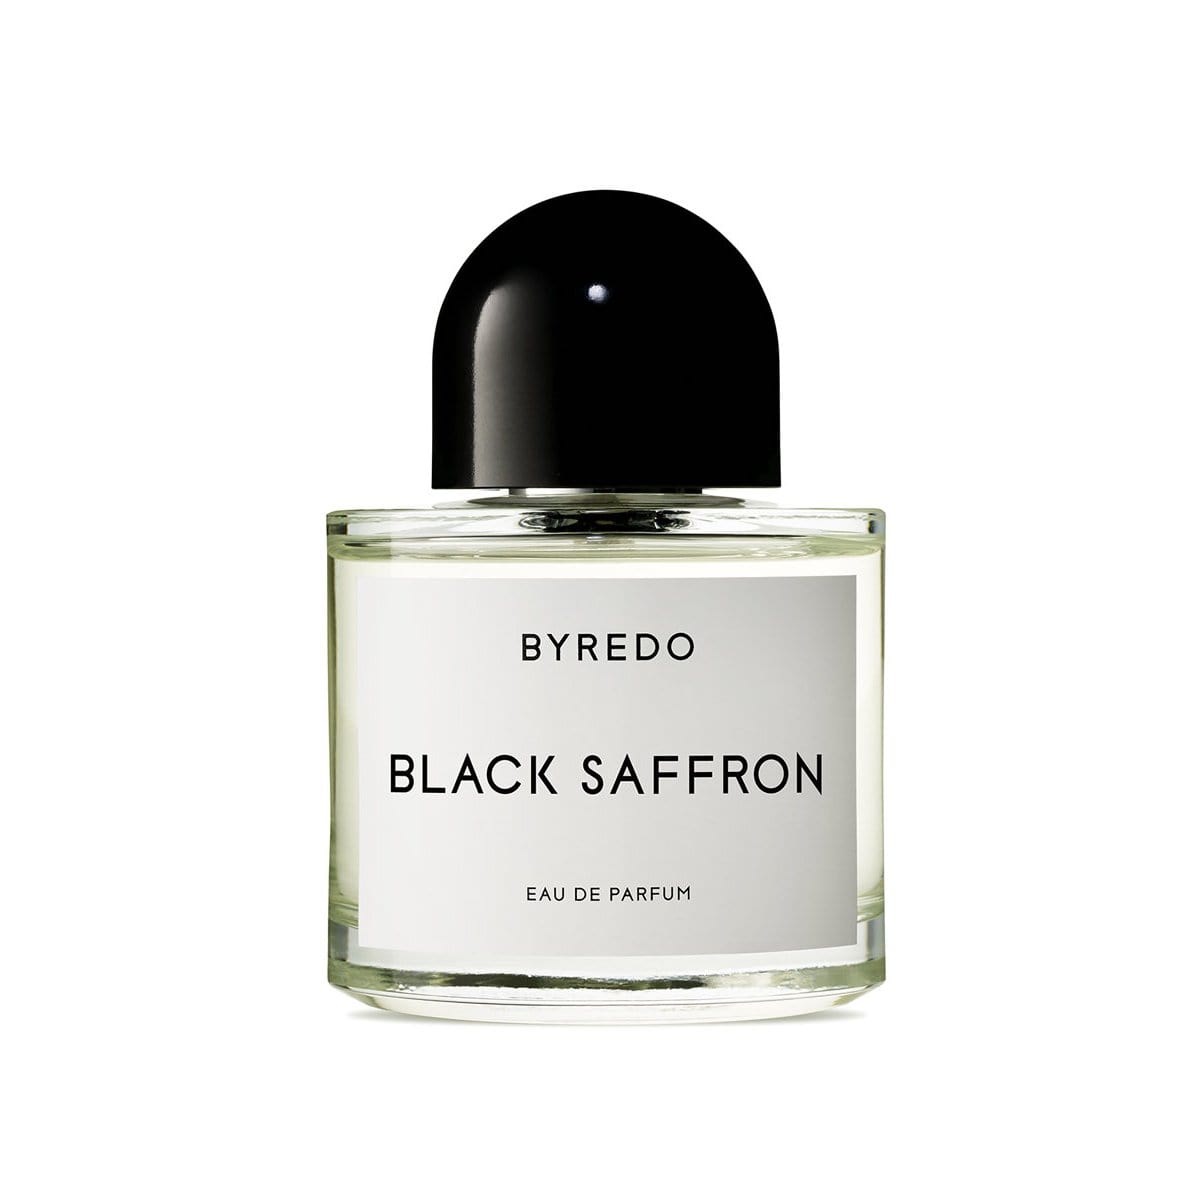 Black Saffron de BYREDO Eau de Parfum